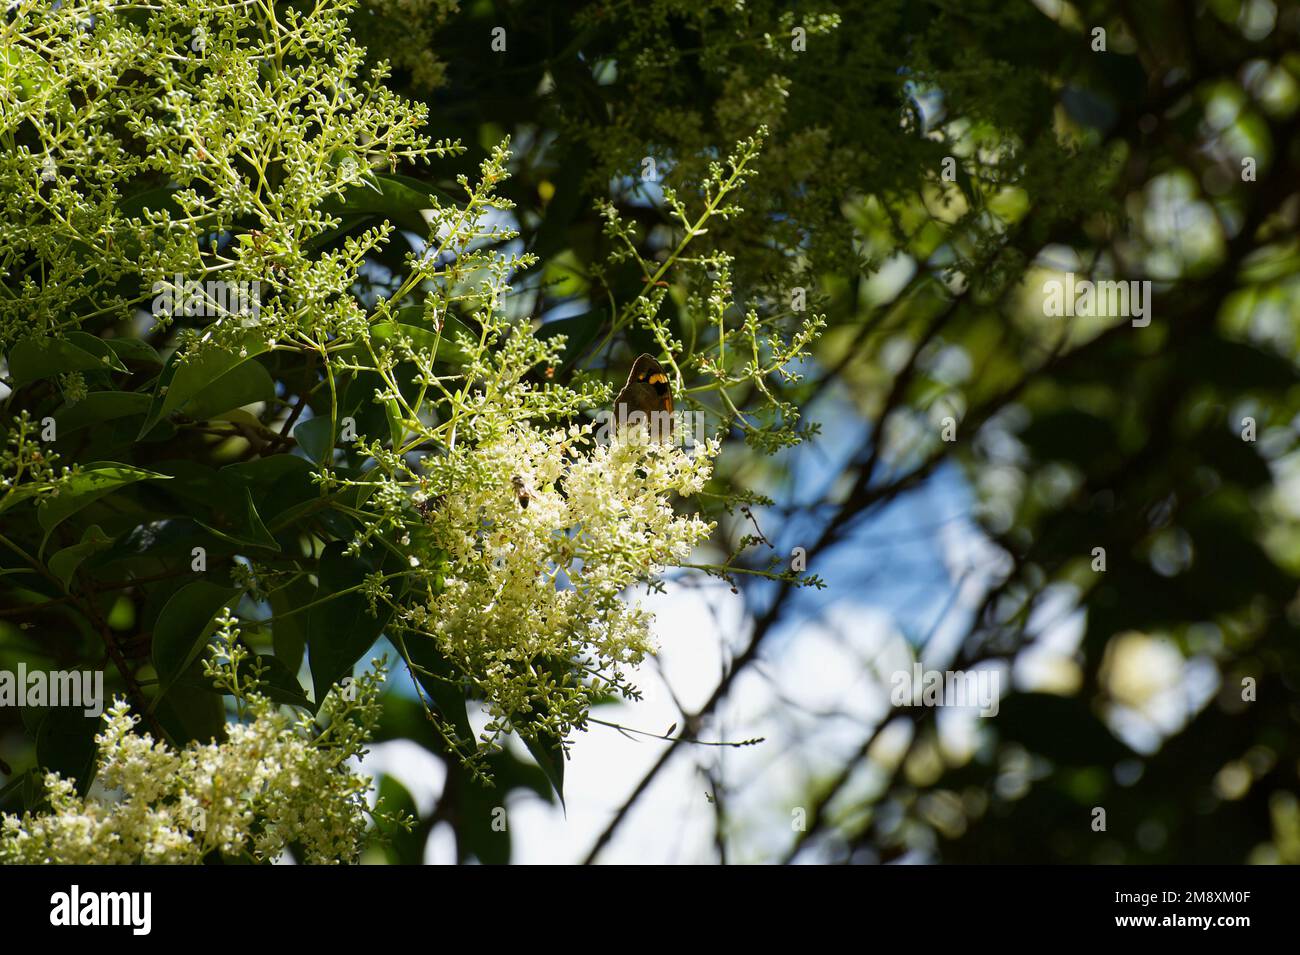 Holunderbeerbäume (Sambucus Nigra) sind europäisch und nicht in Australien heimisch, aber ihre Blüten und ihr Duft sind in unseren Gärten sehr willkommen. Stockfoto